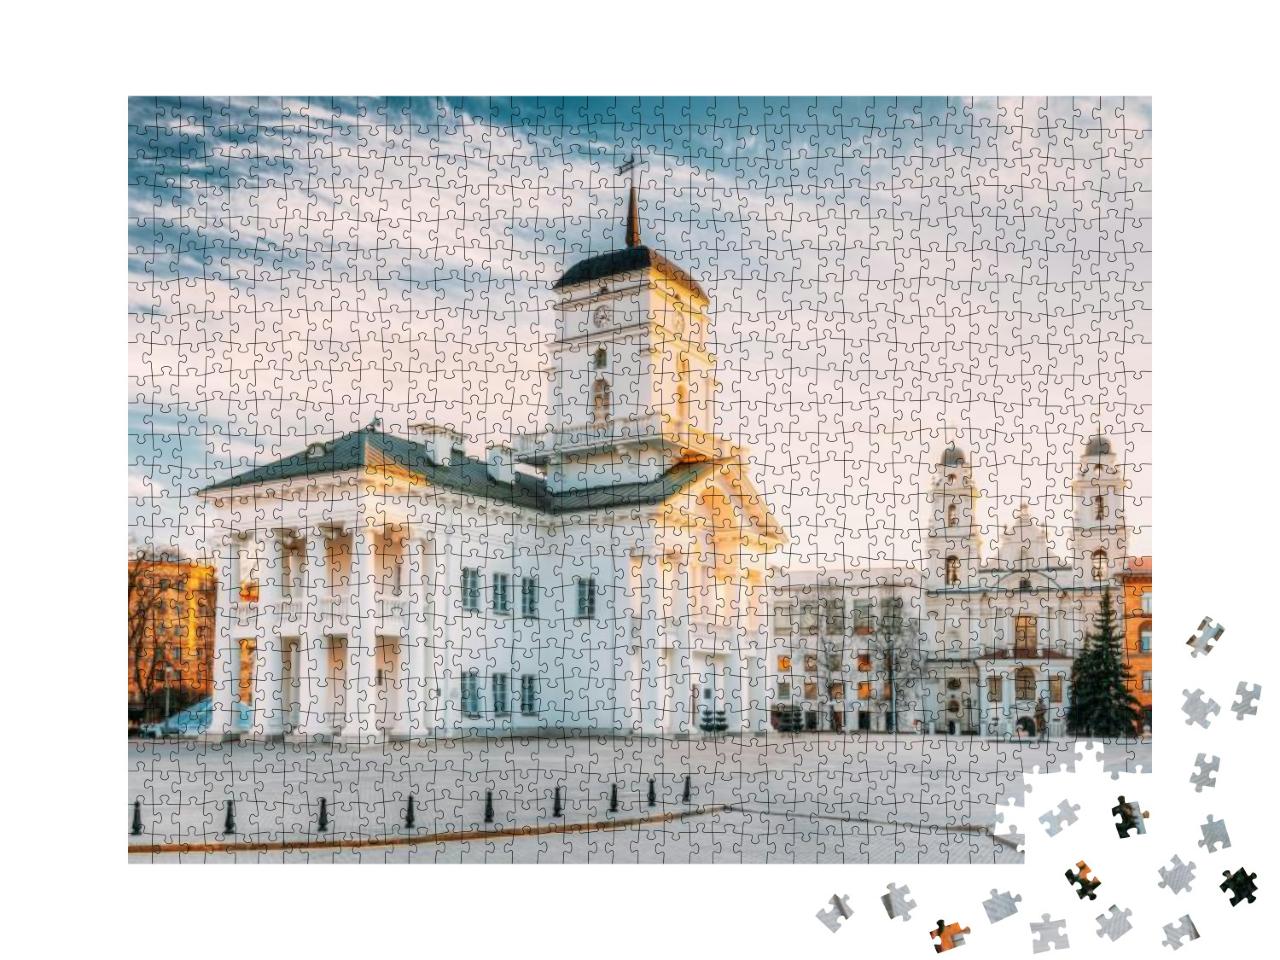 Puzzle 1000 Teile „Altes Minsker Rathaus auf dem Freiheitsplatz, Belarus“